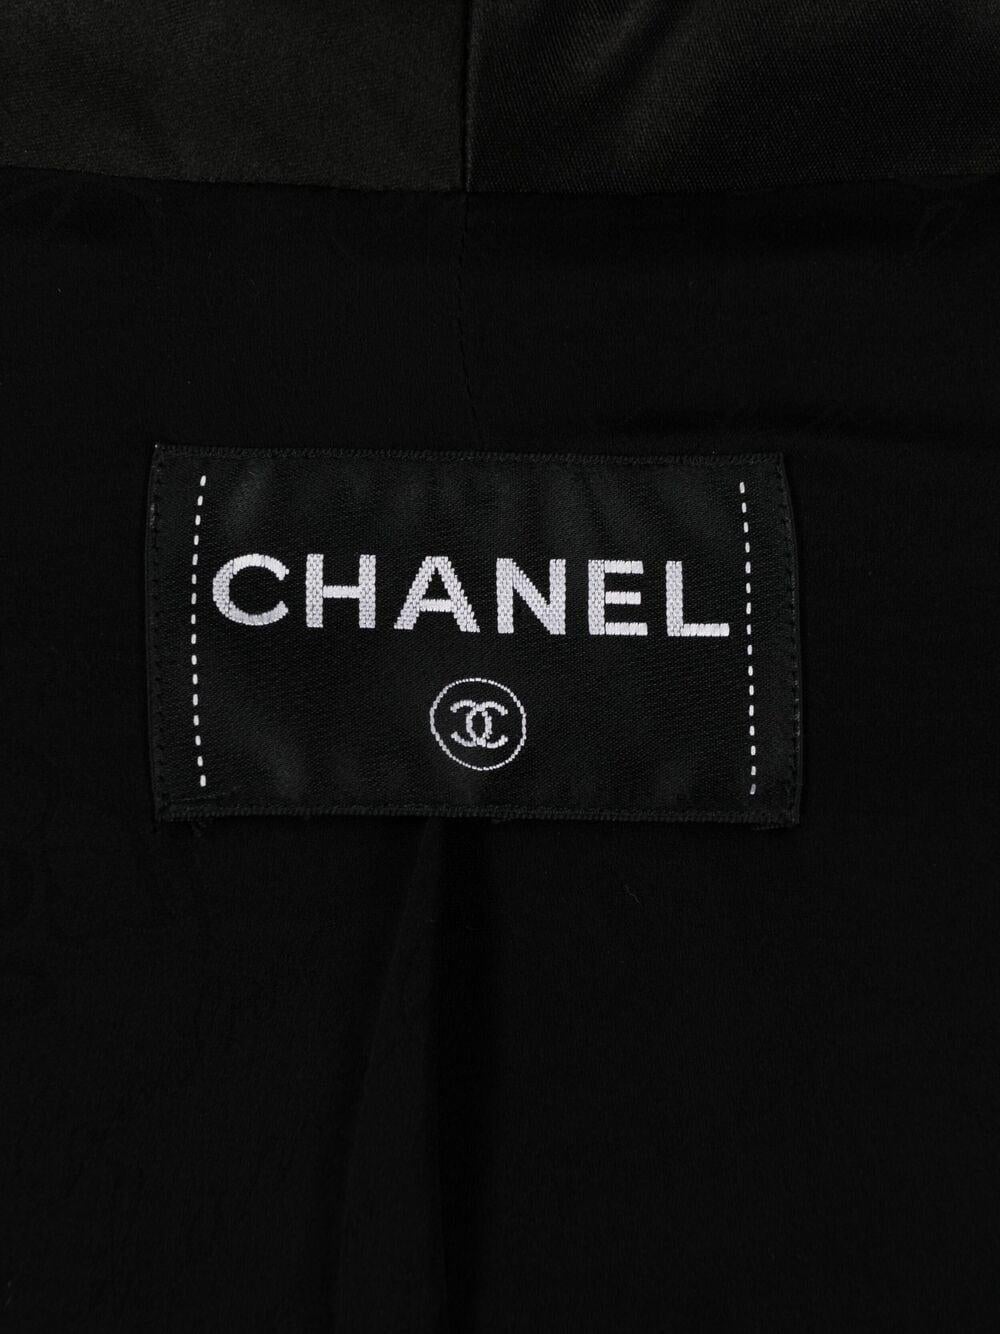 2012 Chanel Paris-Bombay Metiers d Art Black Cotton Boucle Jacket For Sale 3